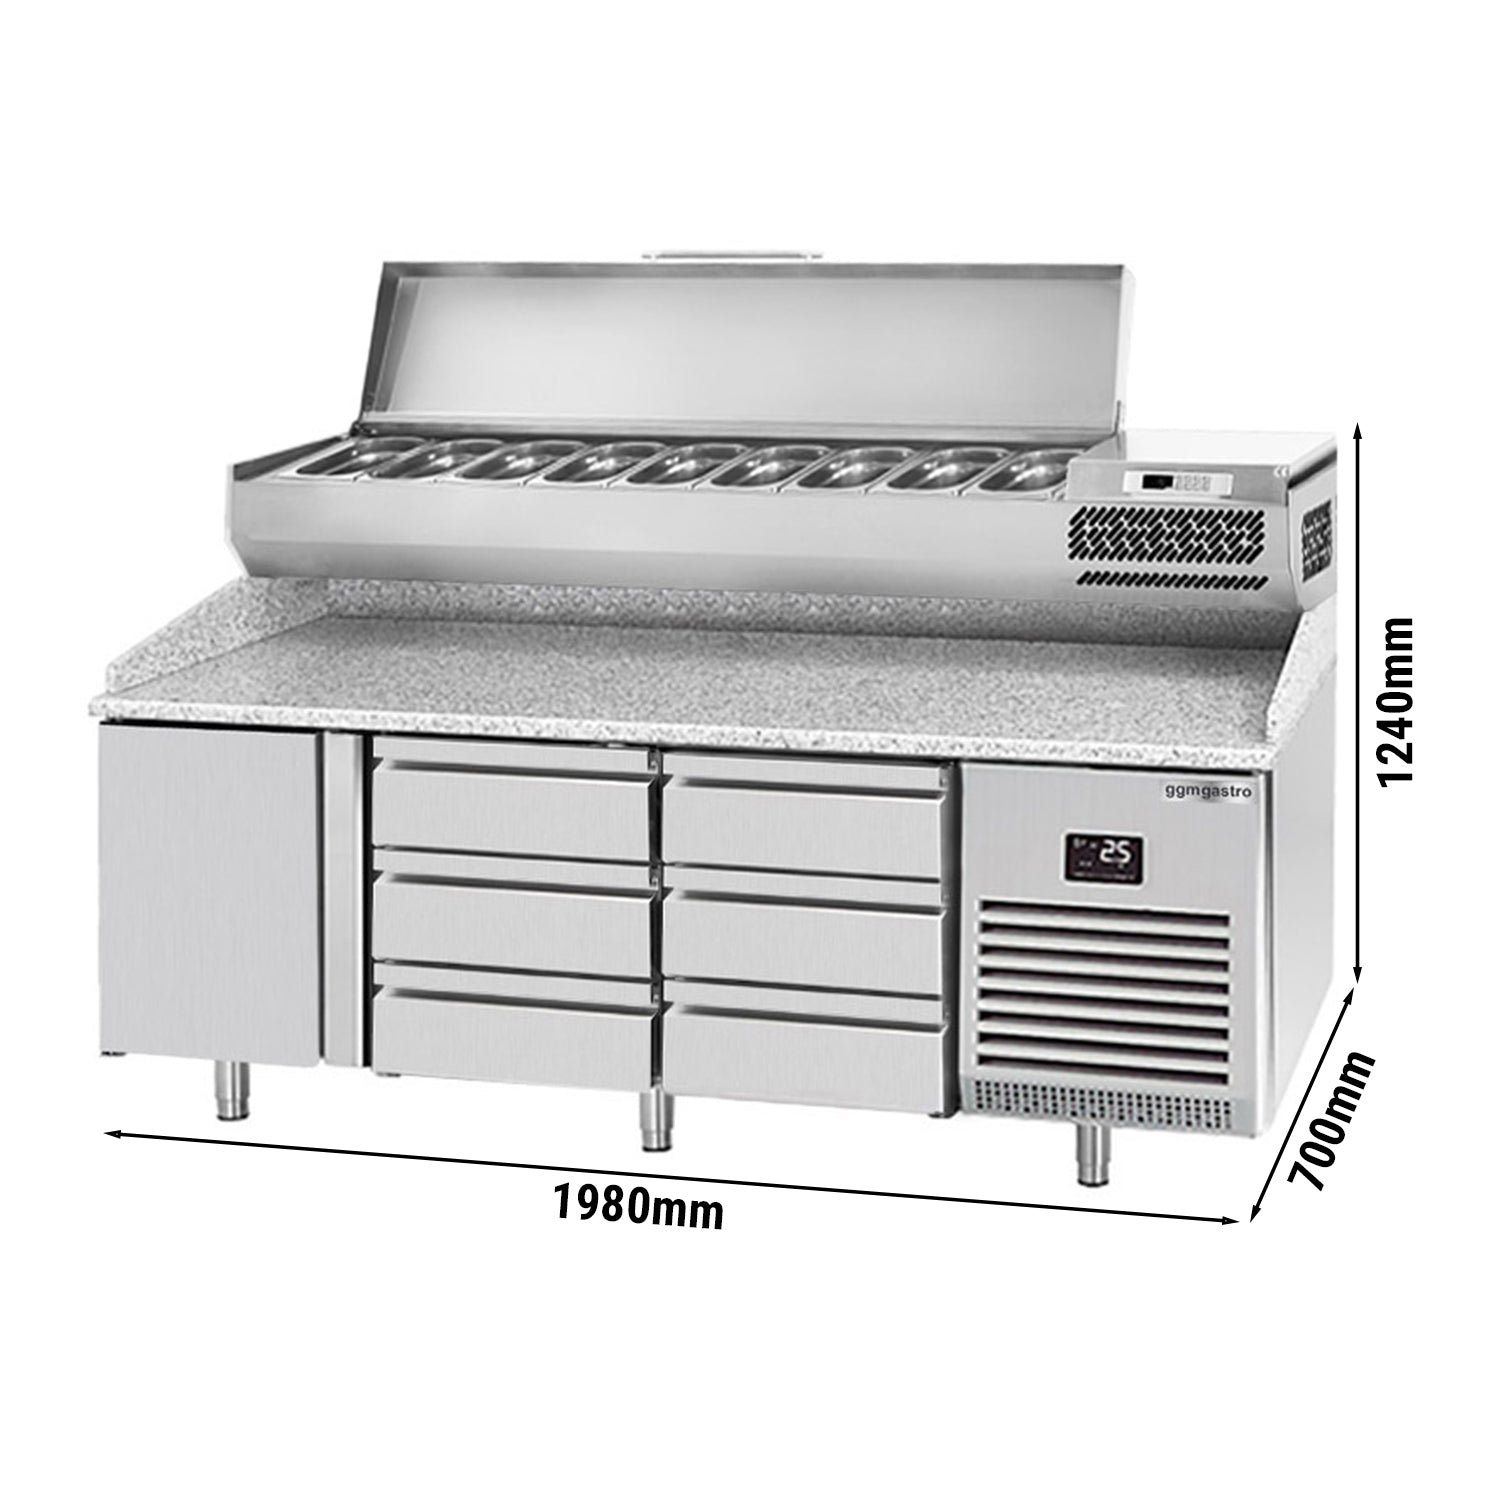 Охладителна маса за пица (GN) - с 1 врата, 6 чекмеджета 1/3 (GN 1/1) и охлаждаща горна витрина за 9x GN 1/4 контейнера